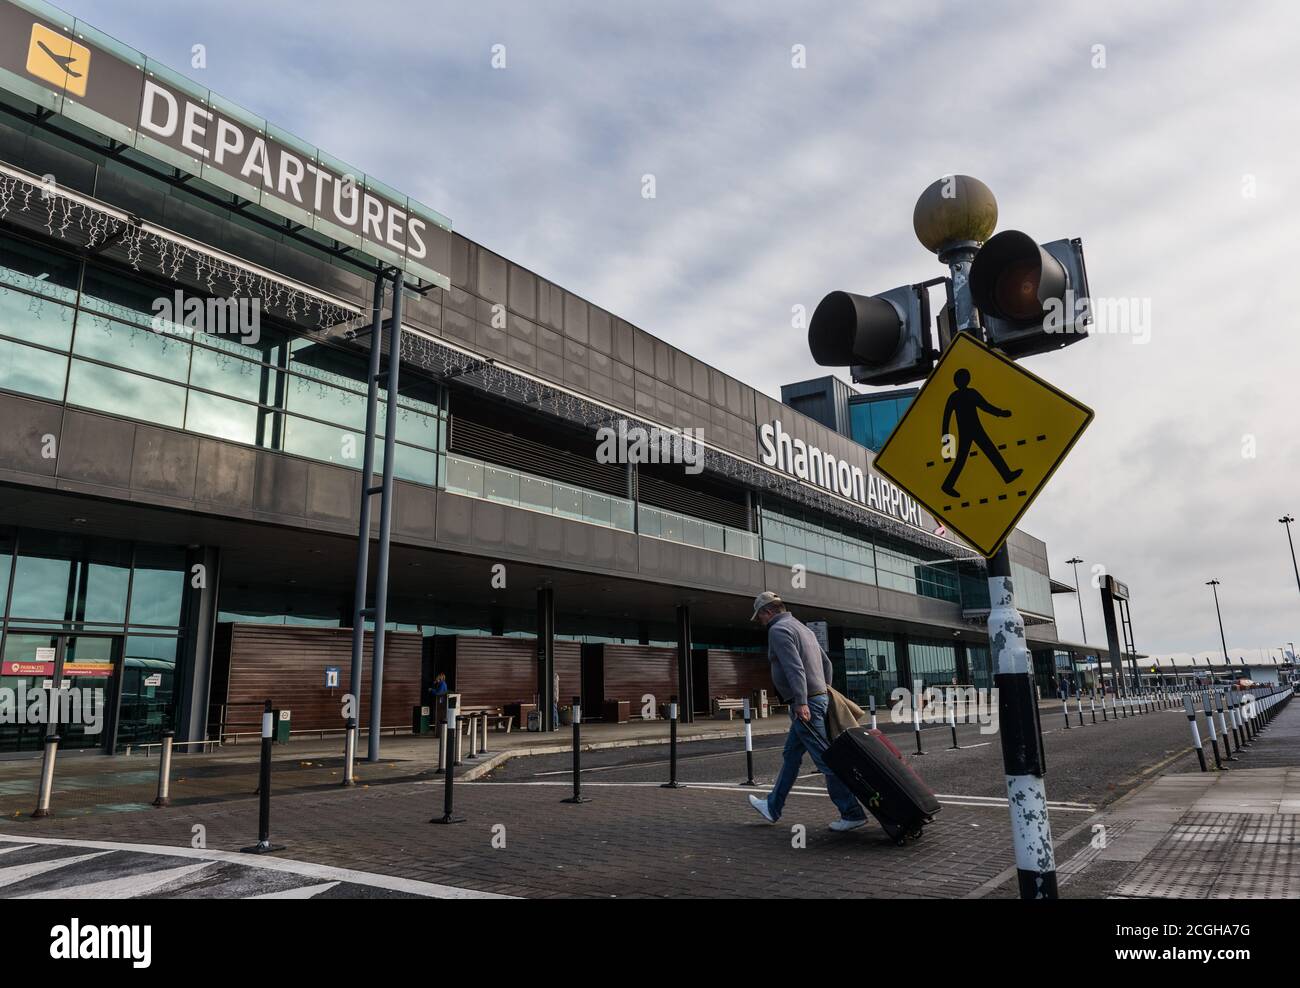 Aeroporto di Shannon, Irlanda - 21 novembre 2016: Uomo che cammina con i bagagli verso la costruzione delle partenze dell'aeroporto di Shannon nella Repubblica d'Irlanda. Foto Stock